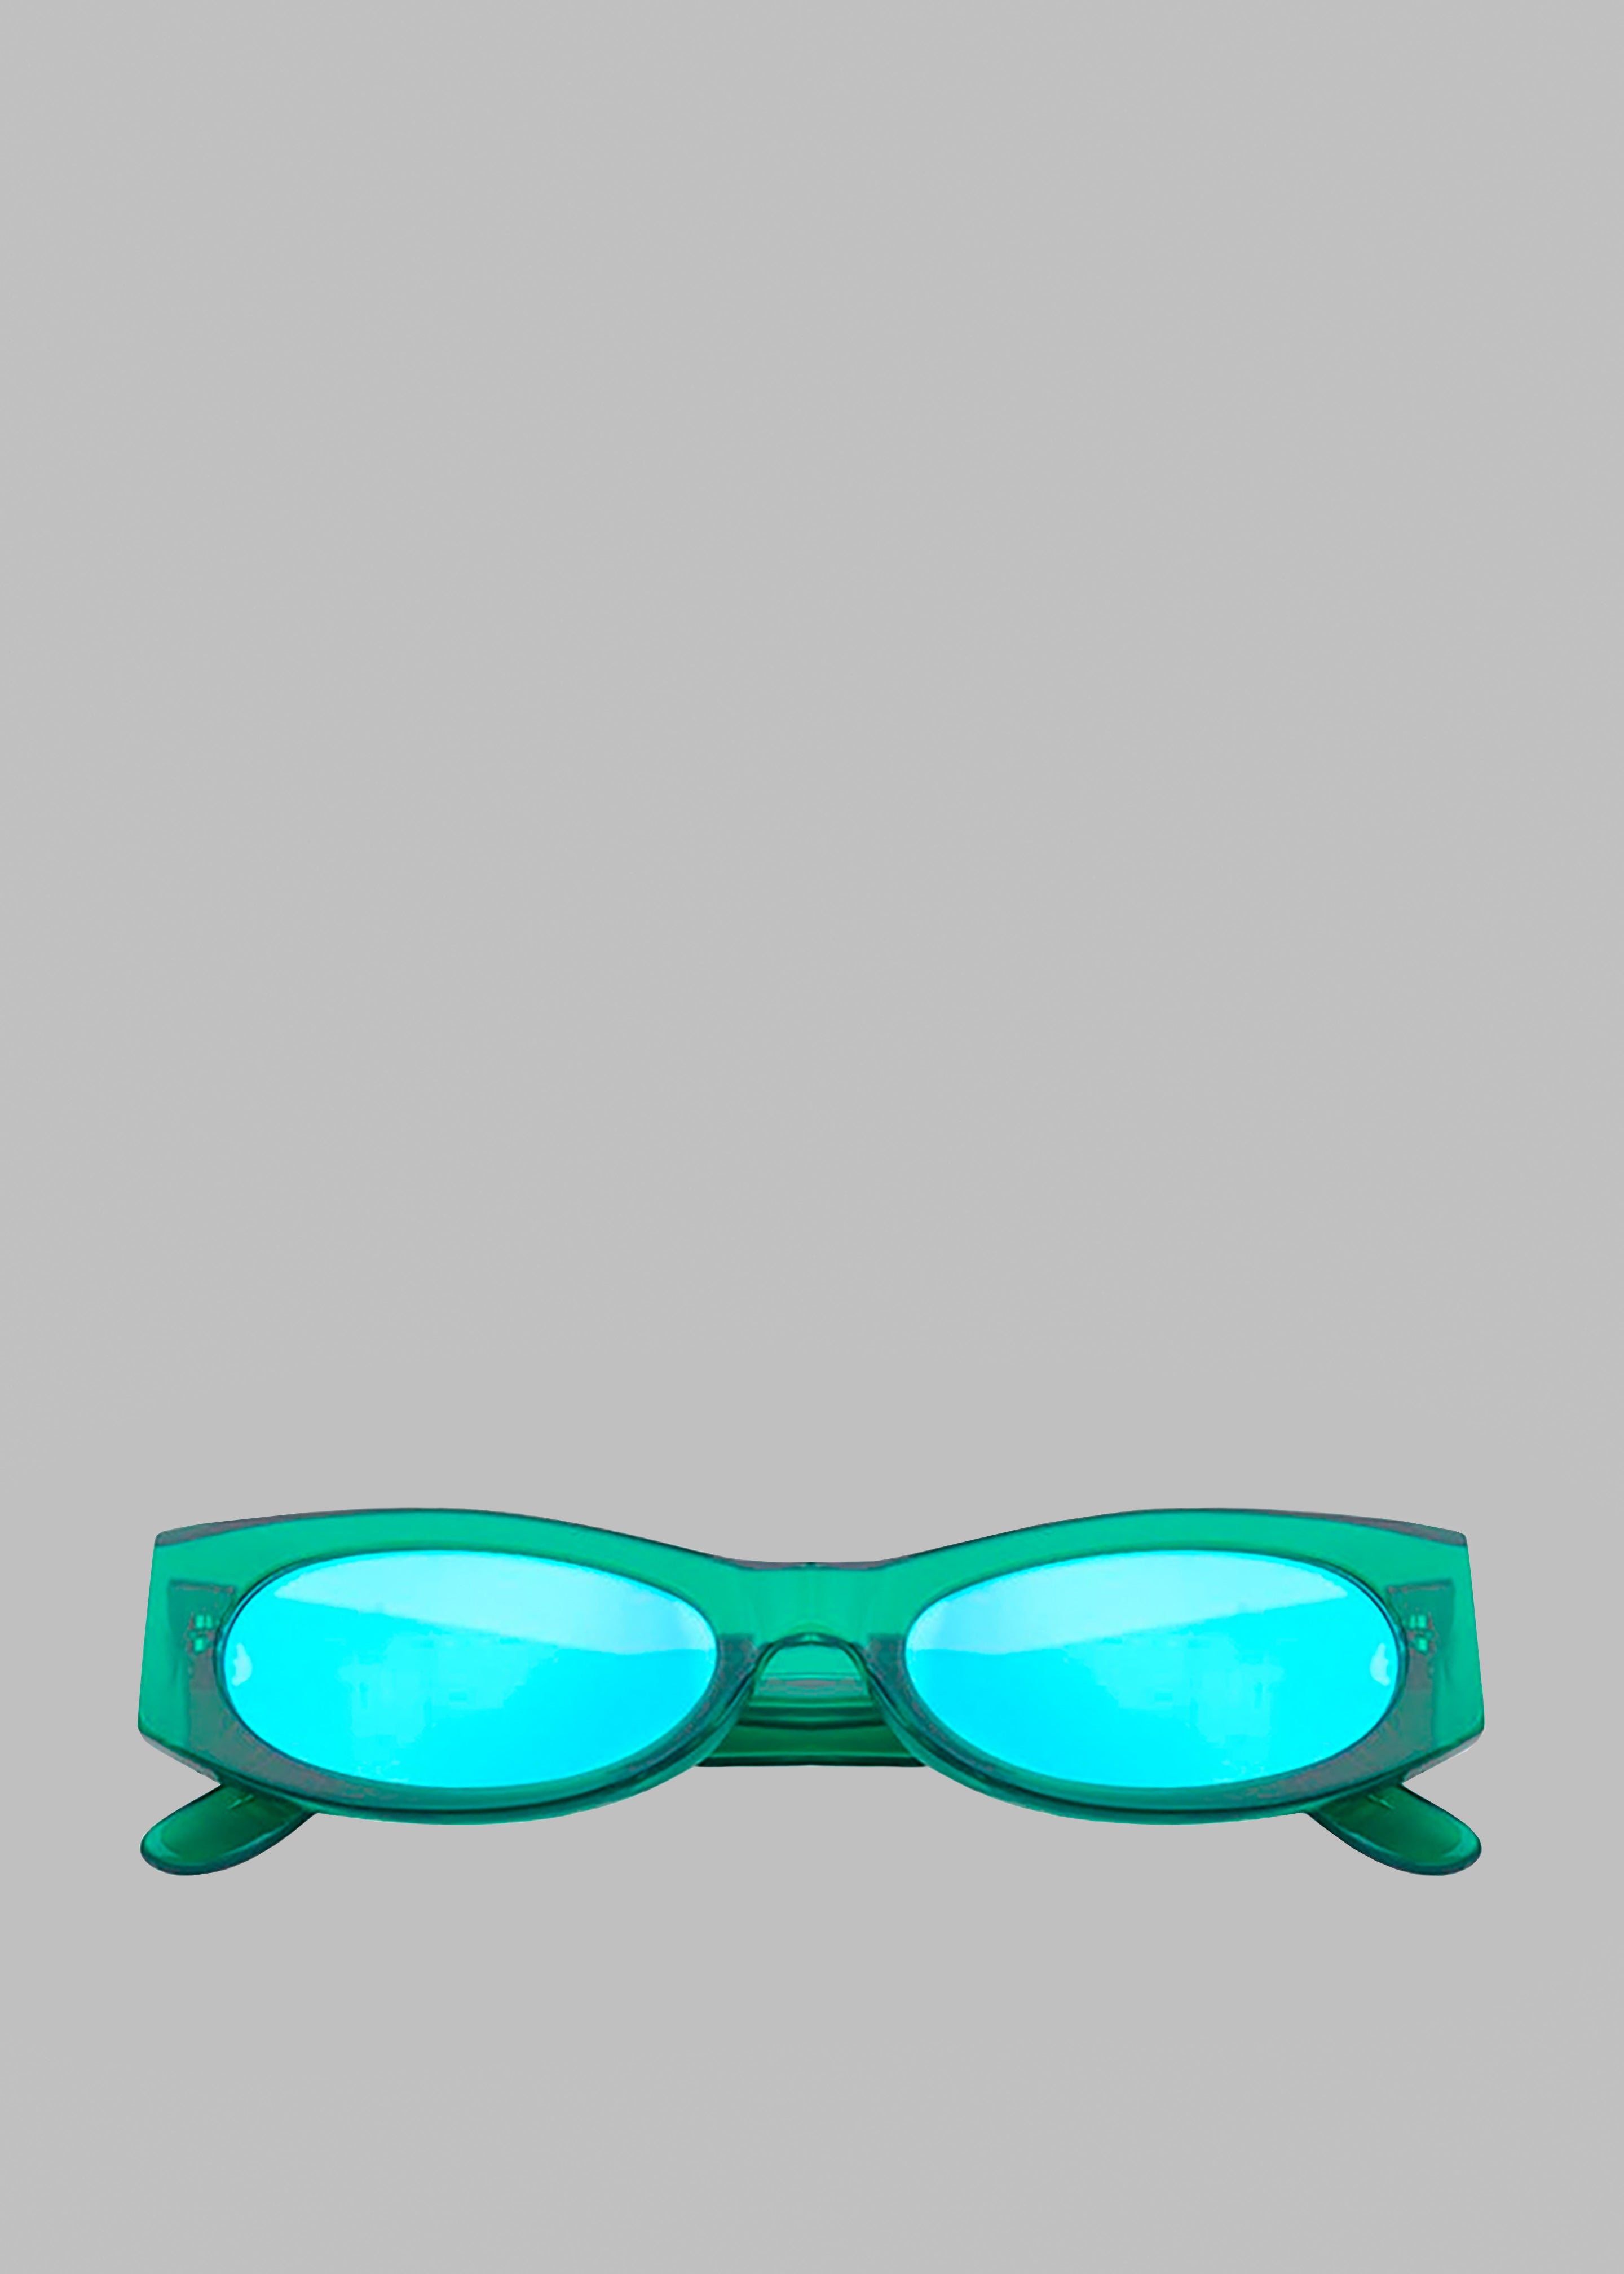 Karen Wazen Ciara Sunglasses - Green Tea - 2